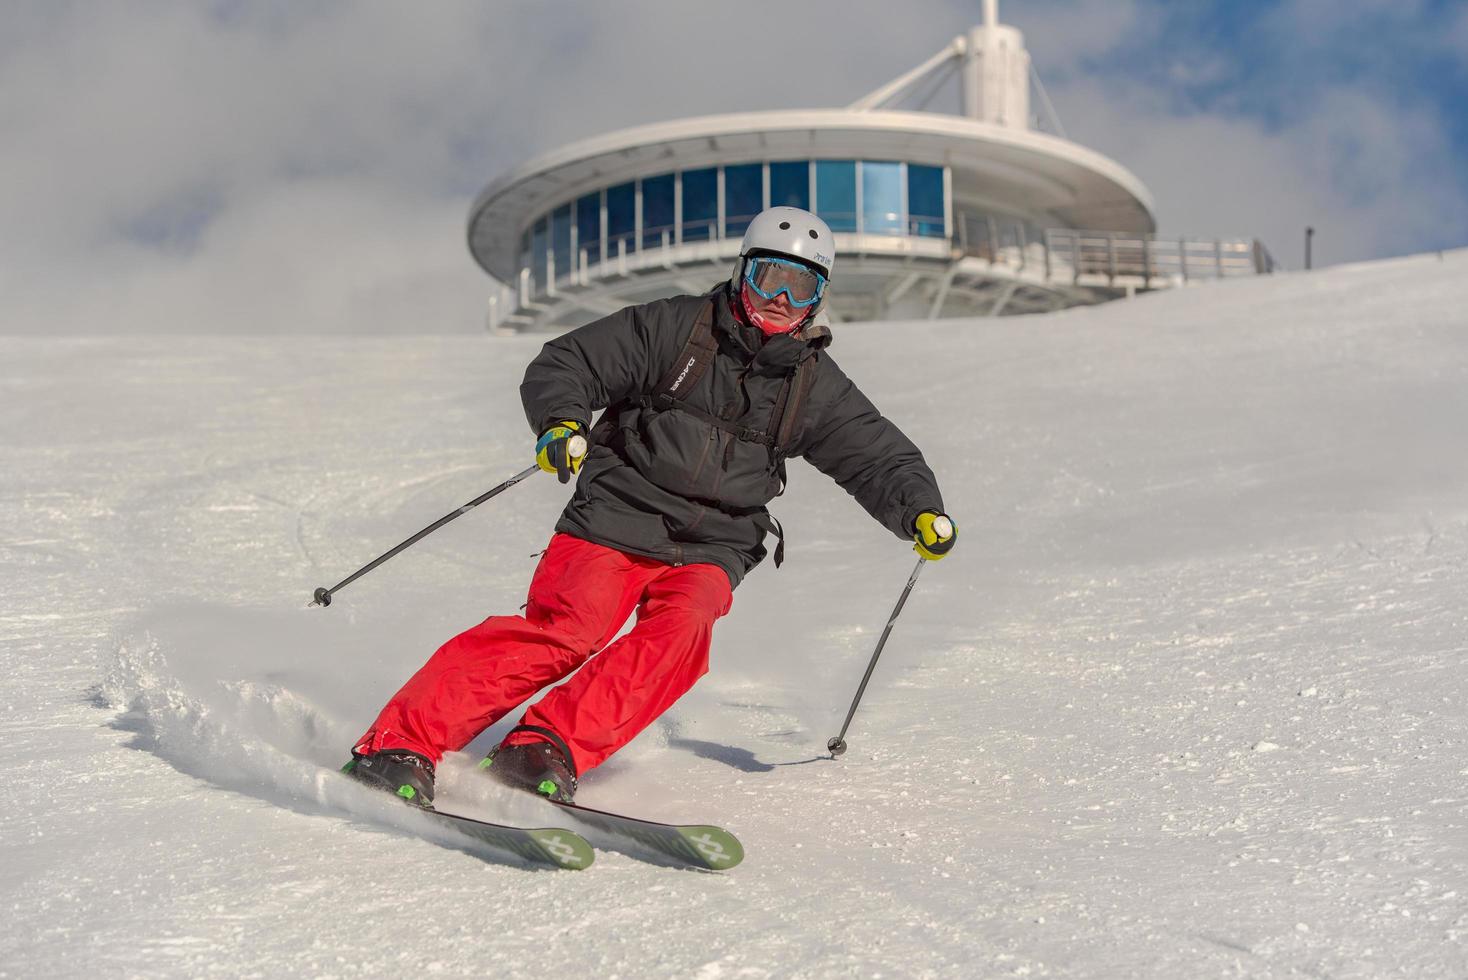 grandvalira, andorra. 11 de diciembre de 2021 joven esquiando en los pirineos en la estación de esquí de grandvalira en andorra en covid19 time foto